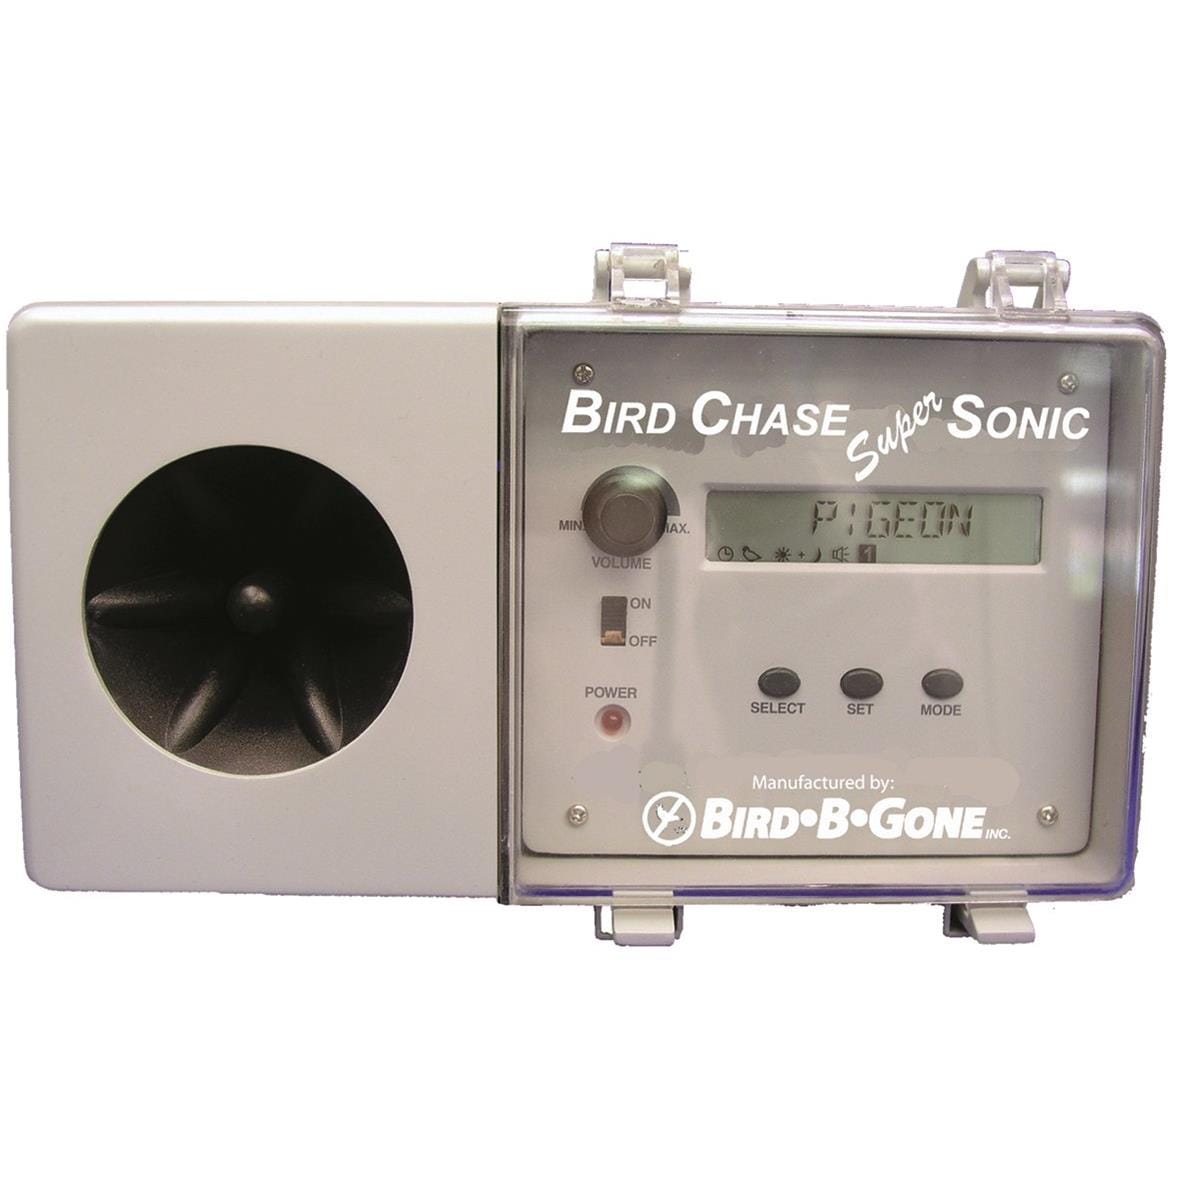 BIRD-B-GONE Bird Chase Super Sonic Sound Deterrent